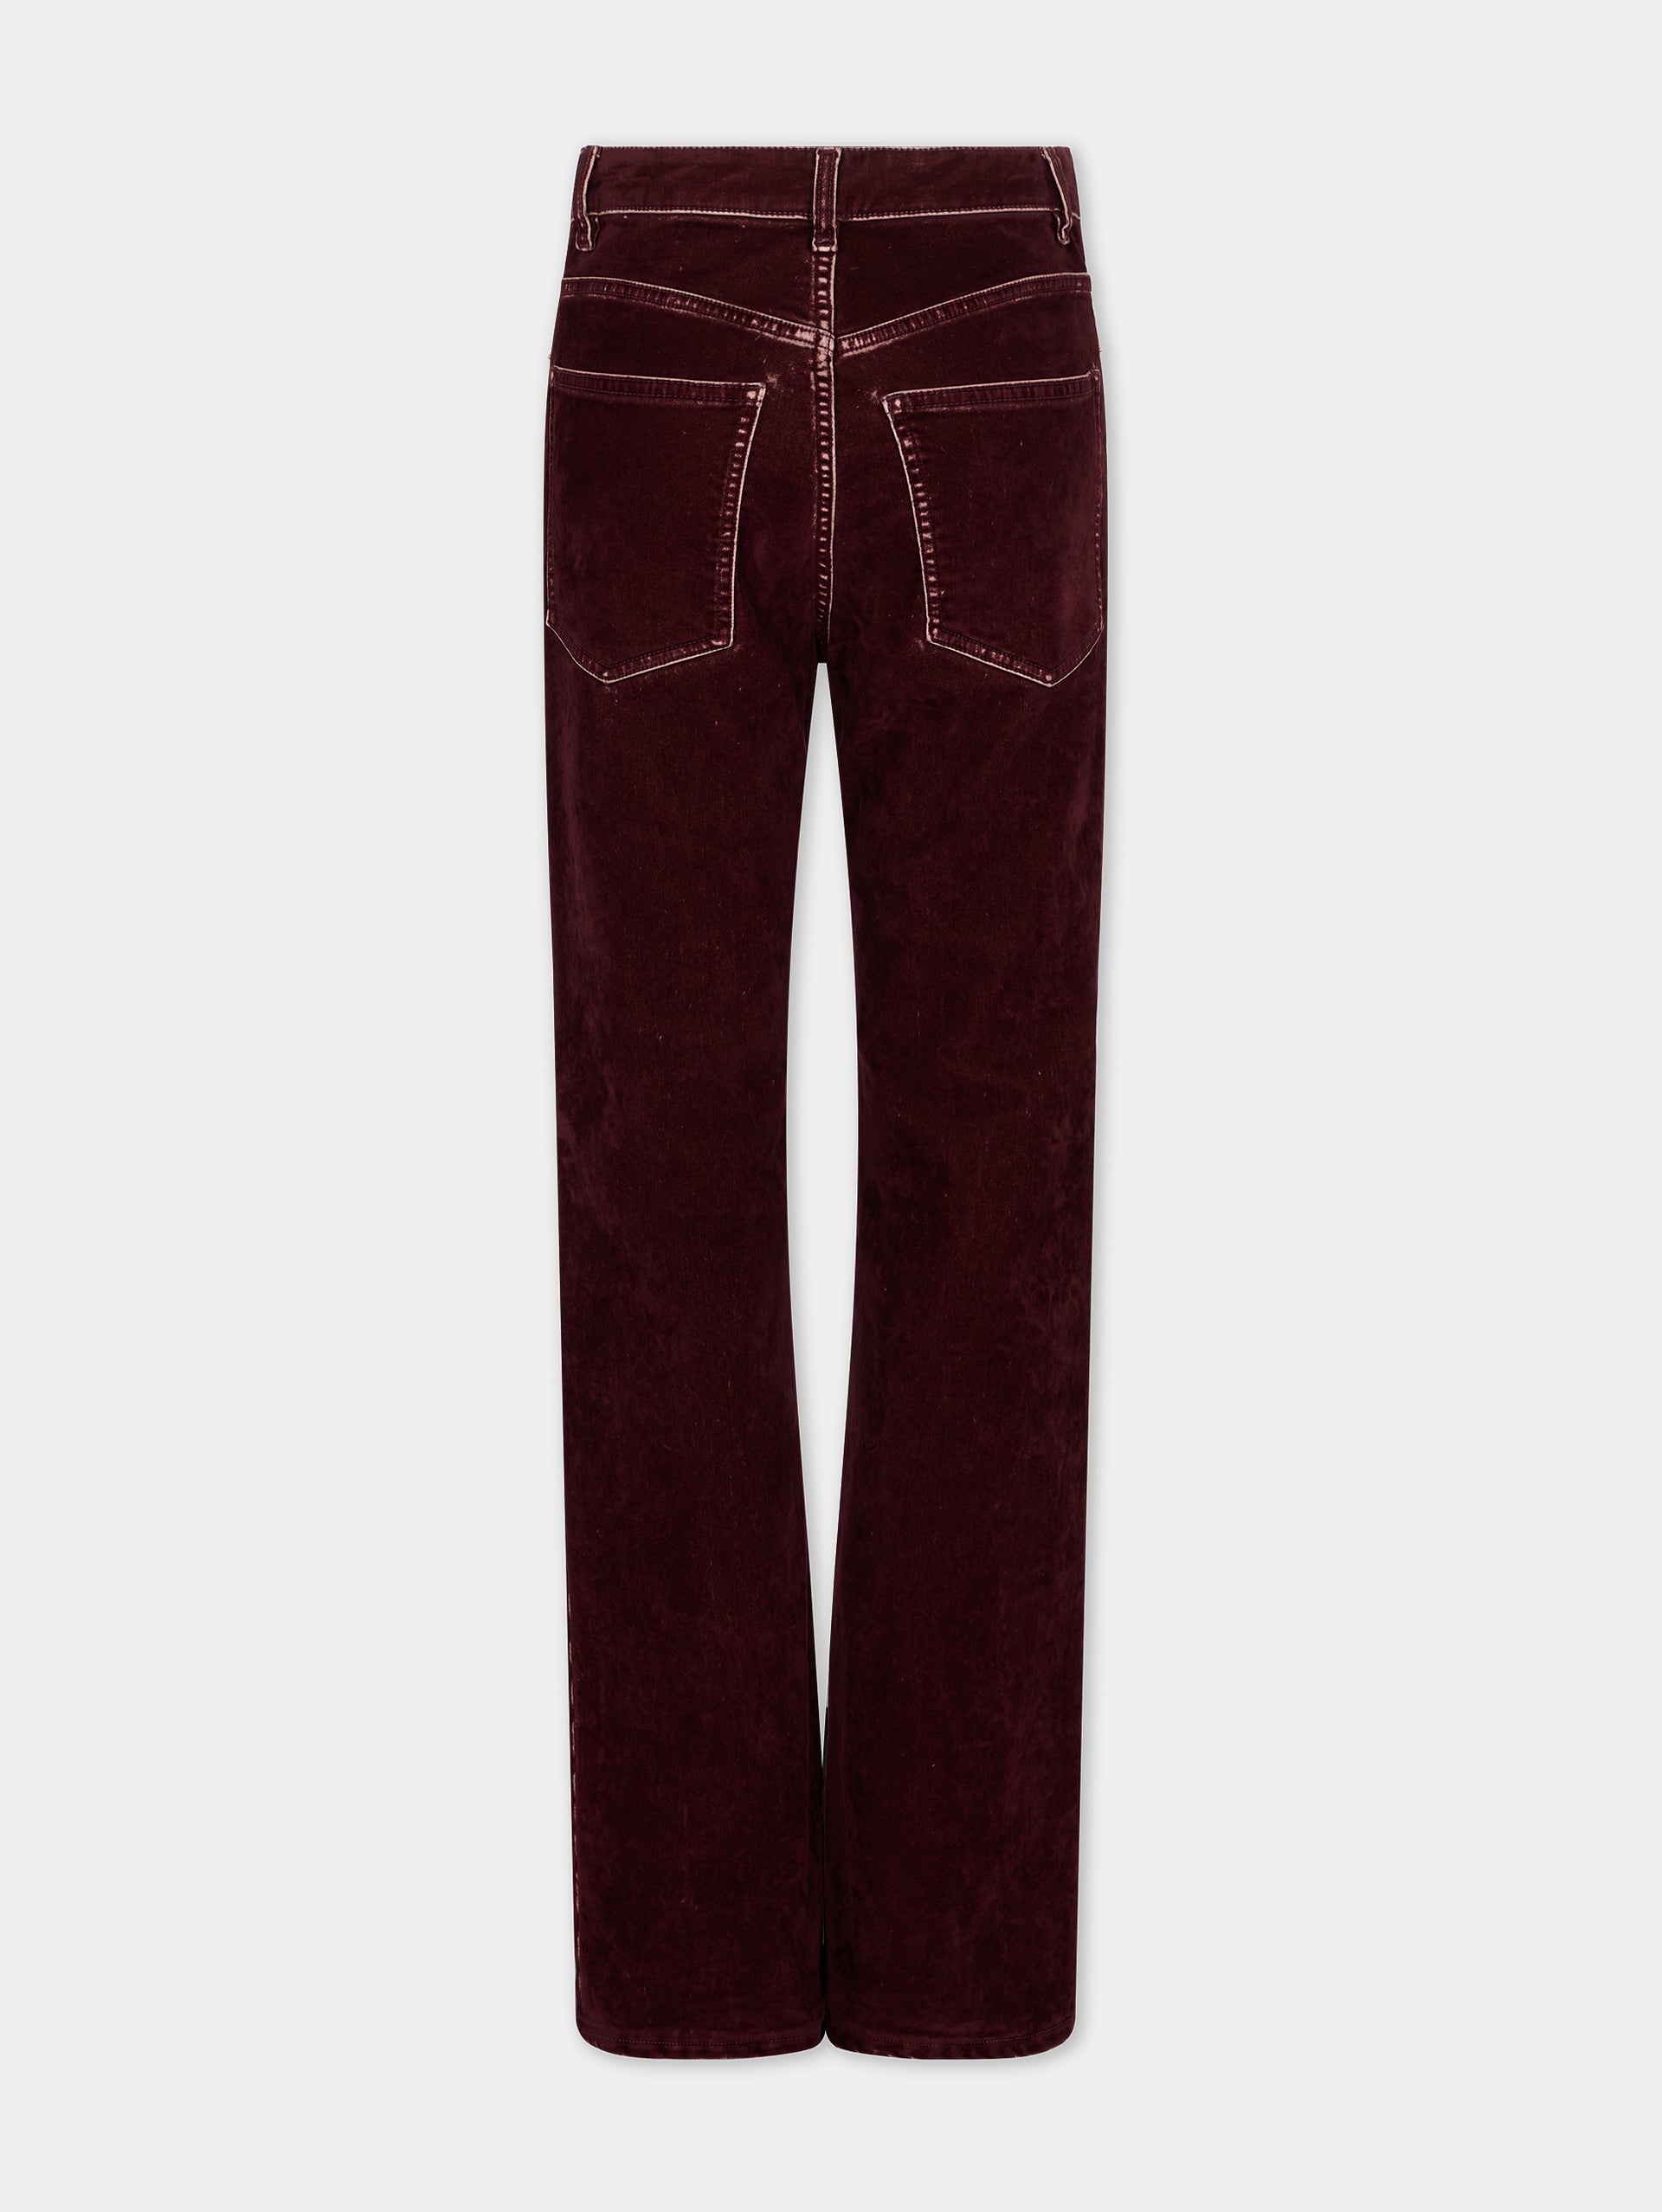 Flare trousers in burgundy velvet